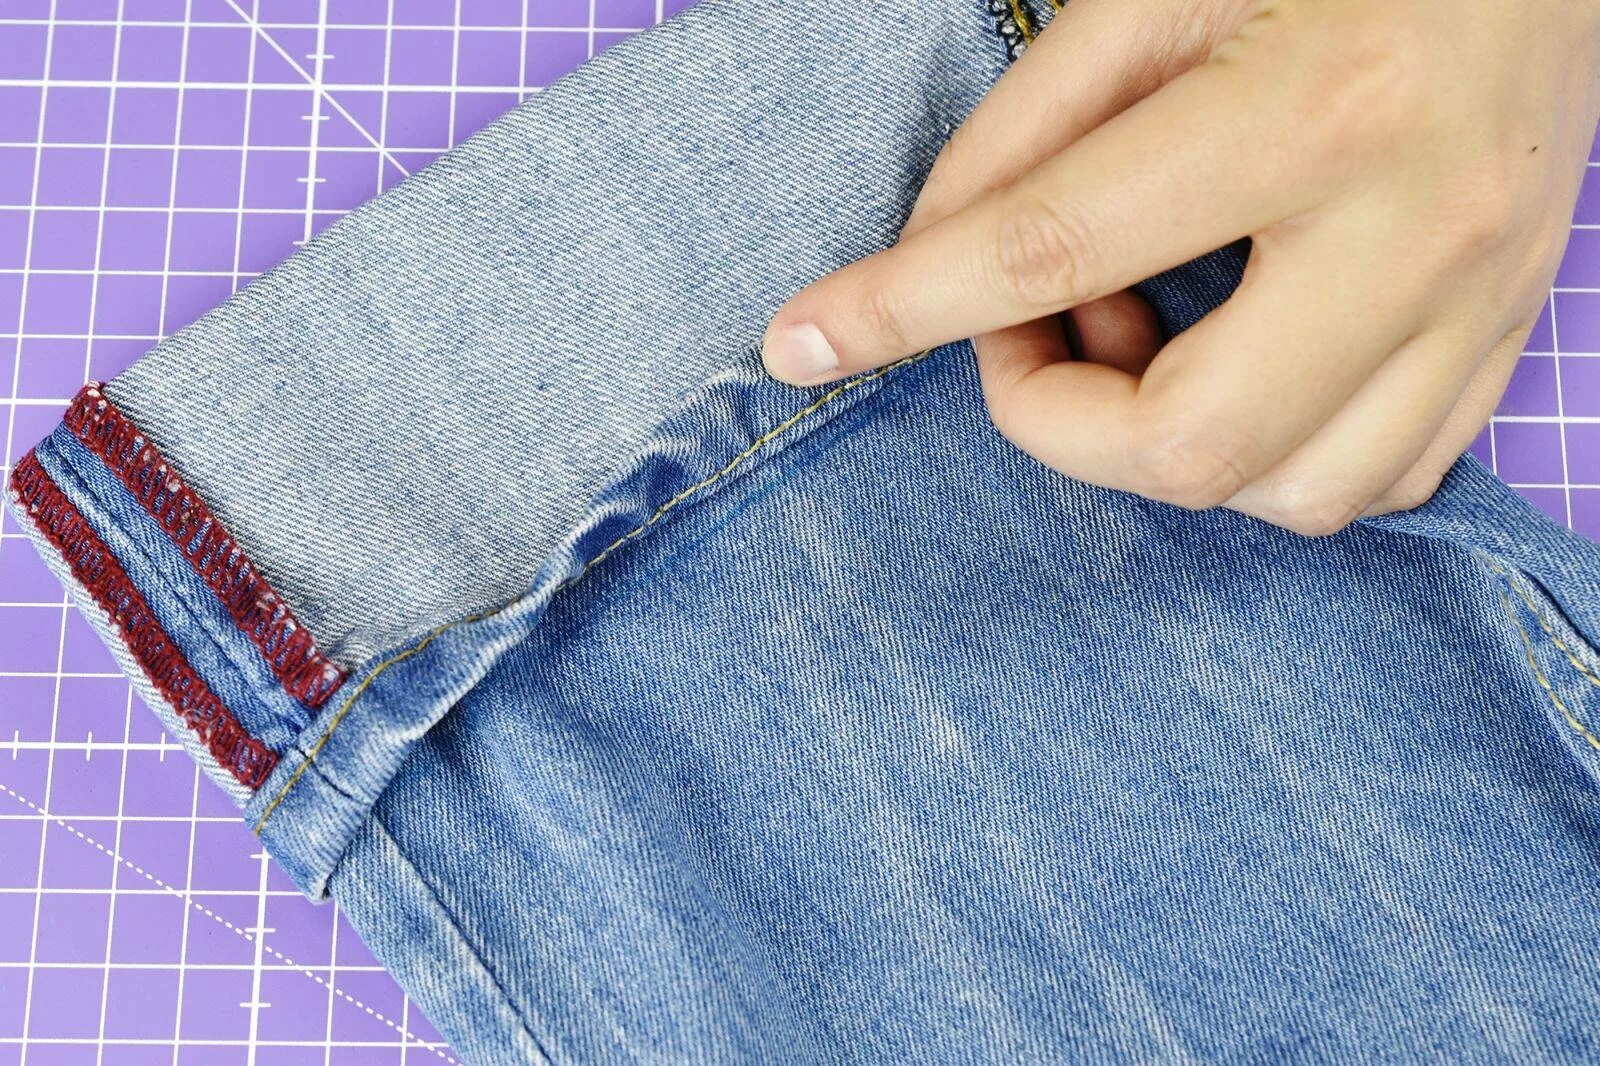 Видео как подшить джинсы с сохранением фабричного. Подшить джинсы. Подгибка джинсов. Подрубить джинсы. Джинсы подгибка вручную.